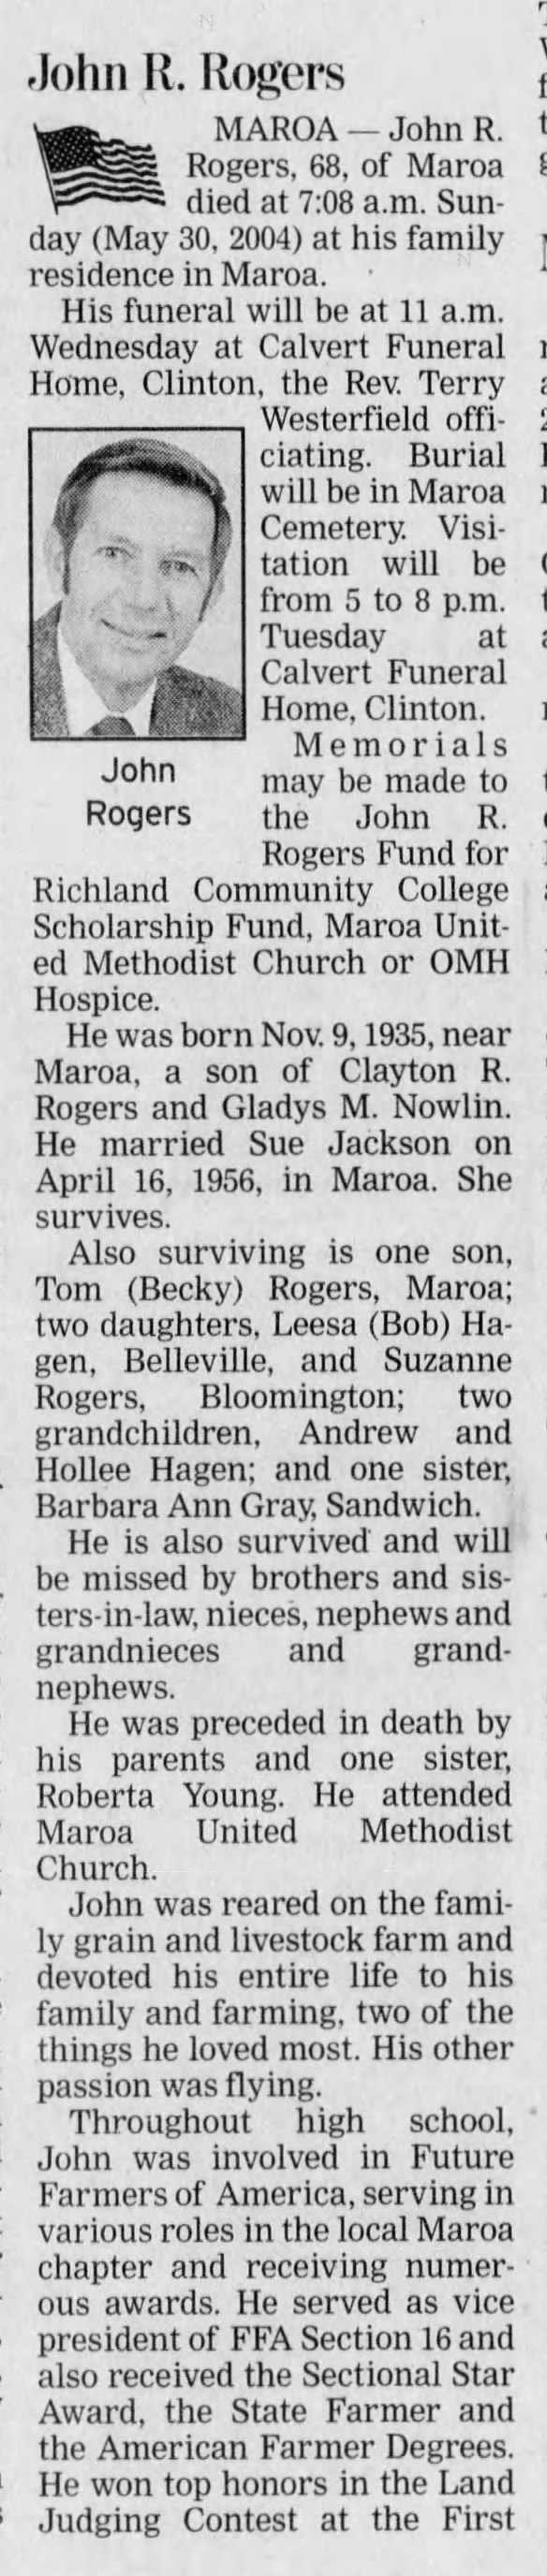 Obituary: John R. Rogers - Part 1